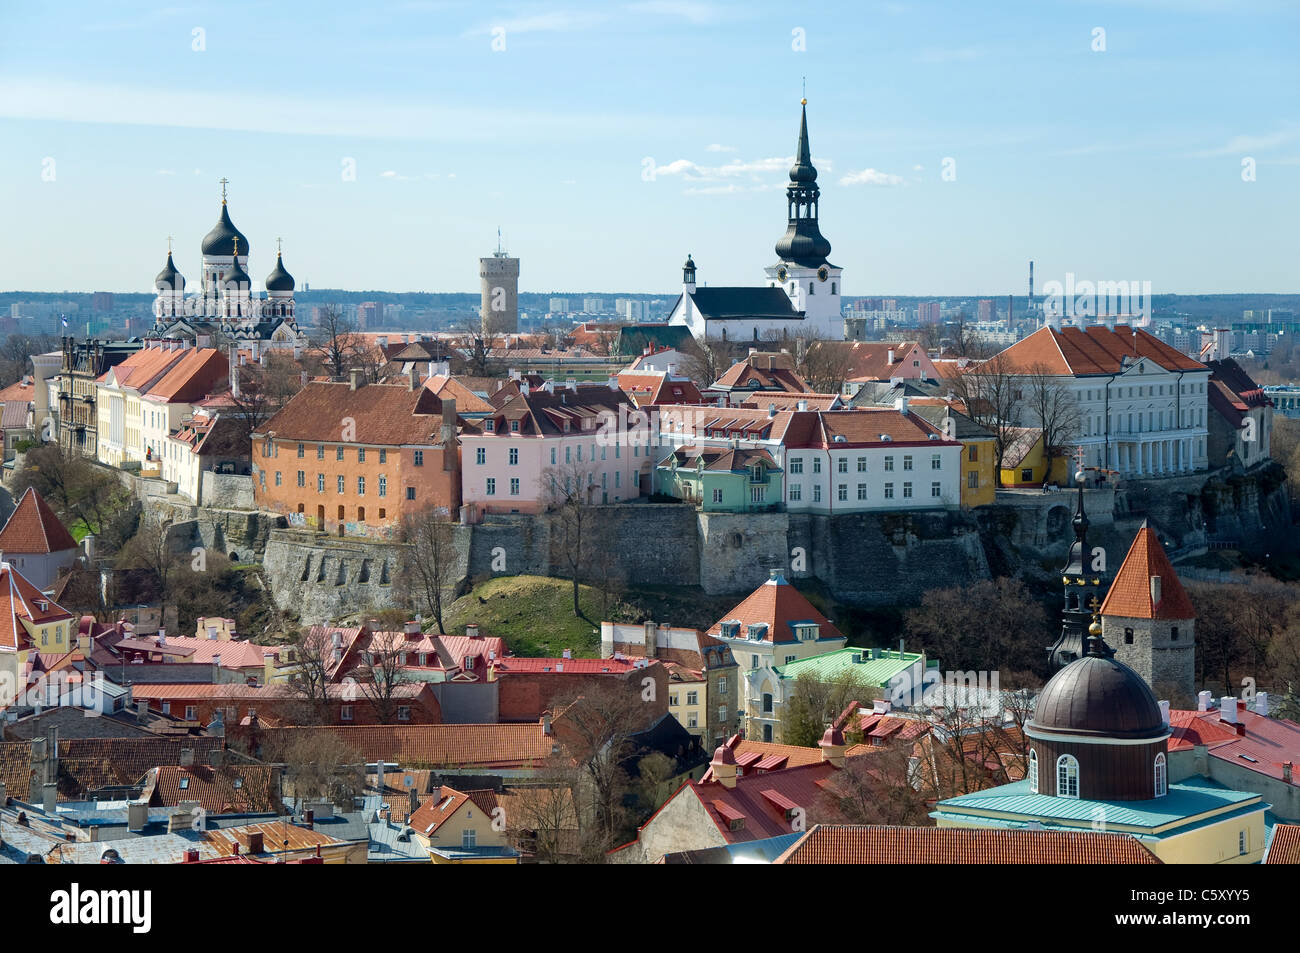 View of Tallinn, Estonia Stock Photo